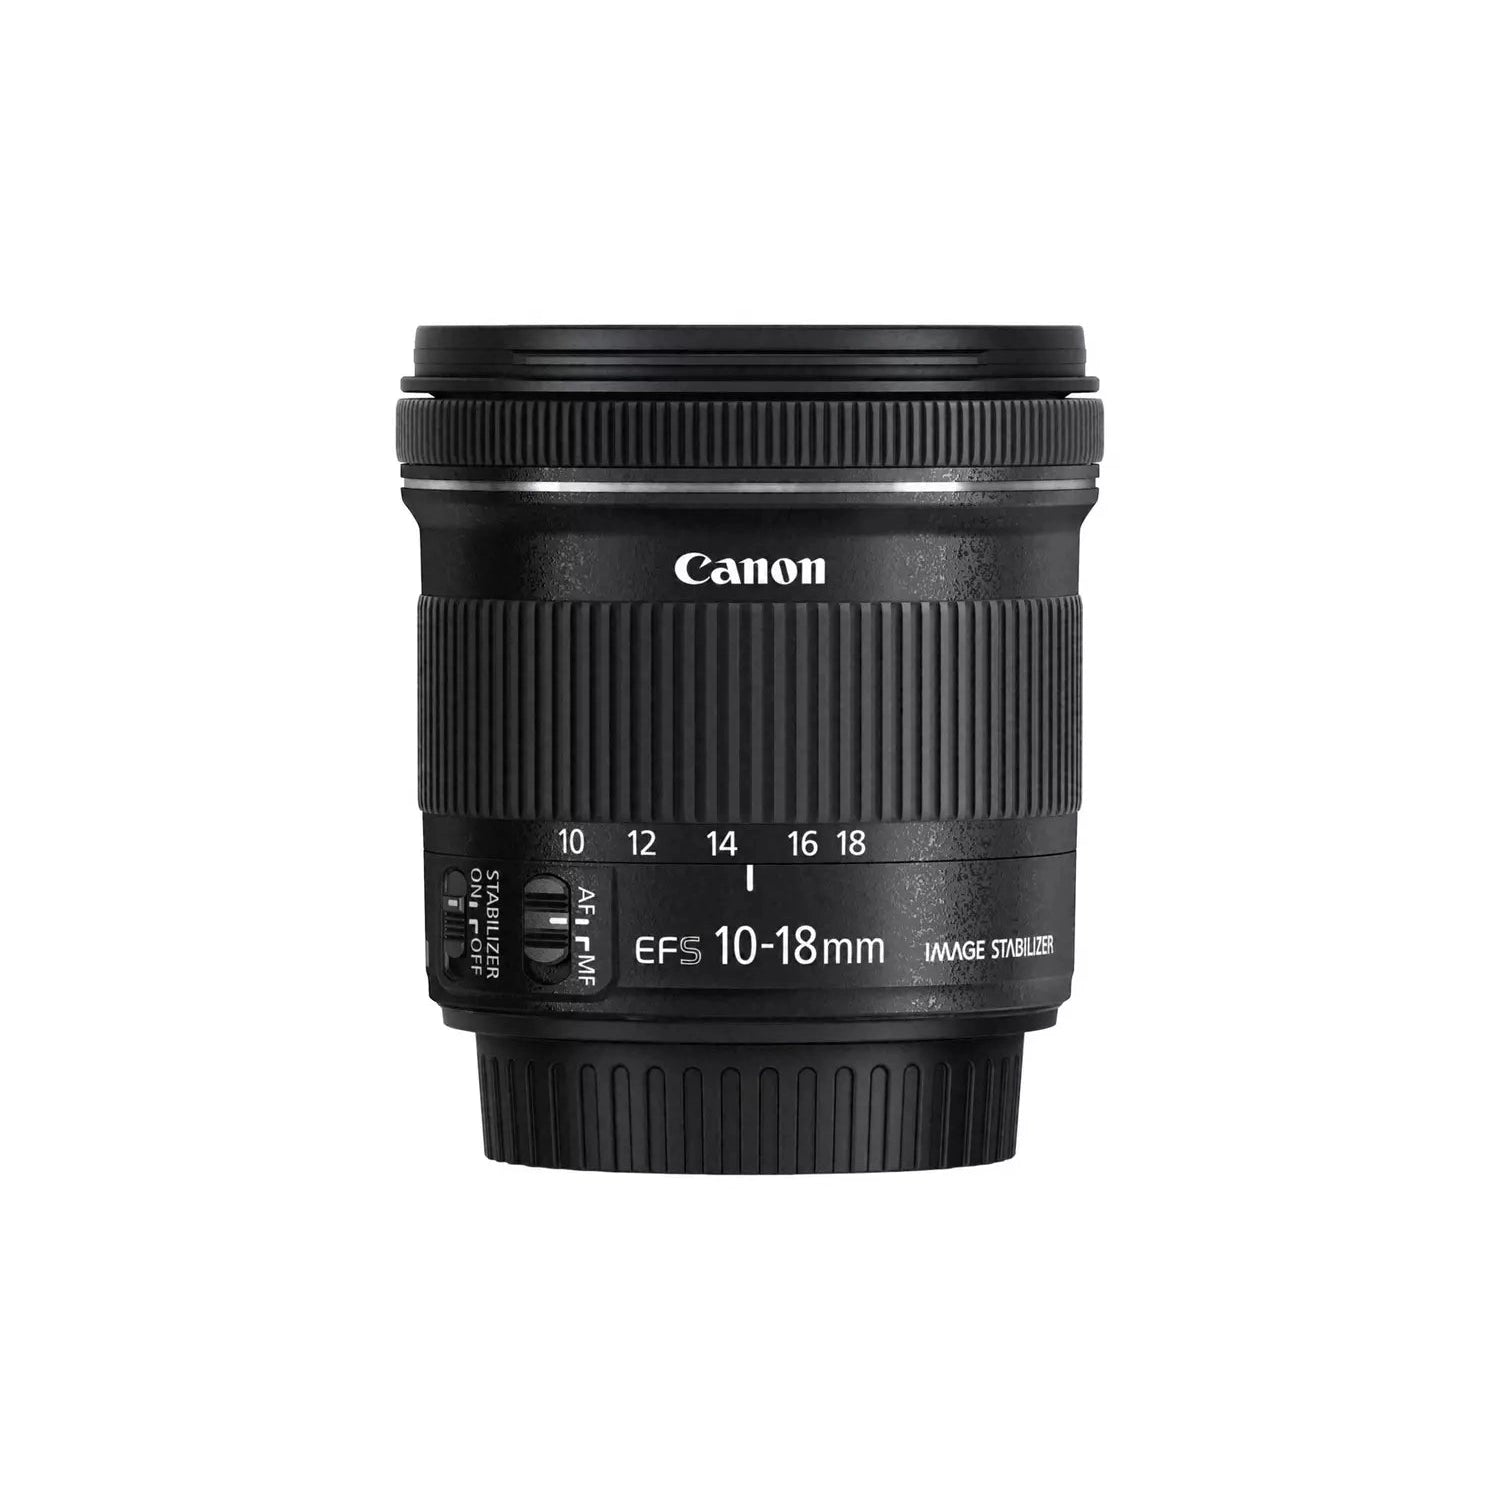 Canon EF-S 10-18mm f/4.5-5.6 IS STM Lens, Black